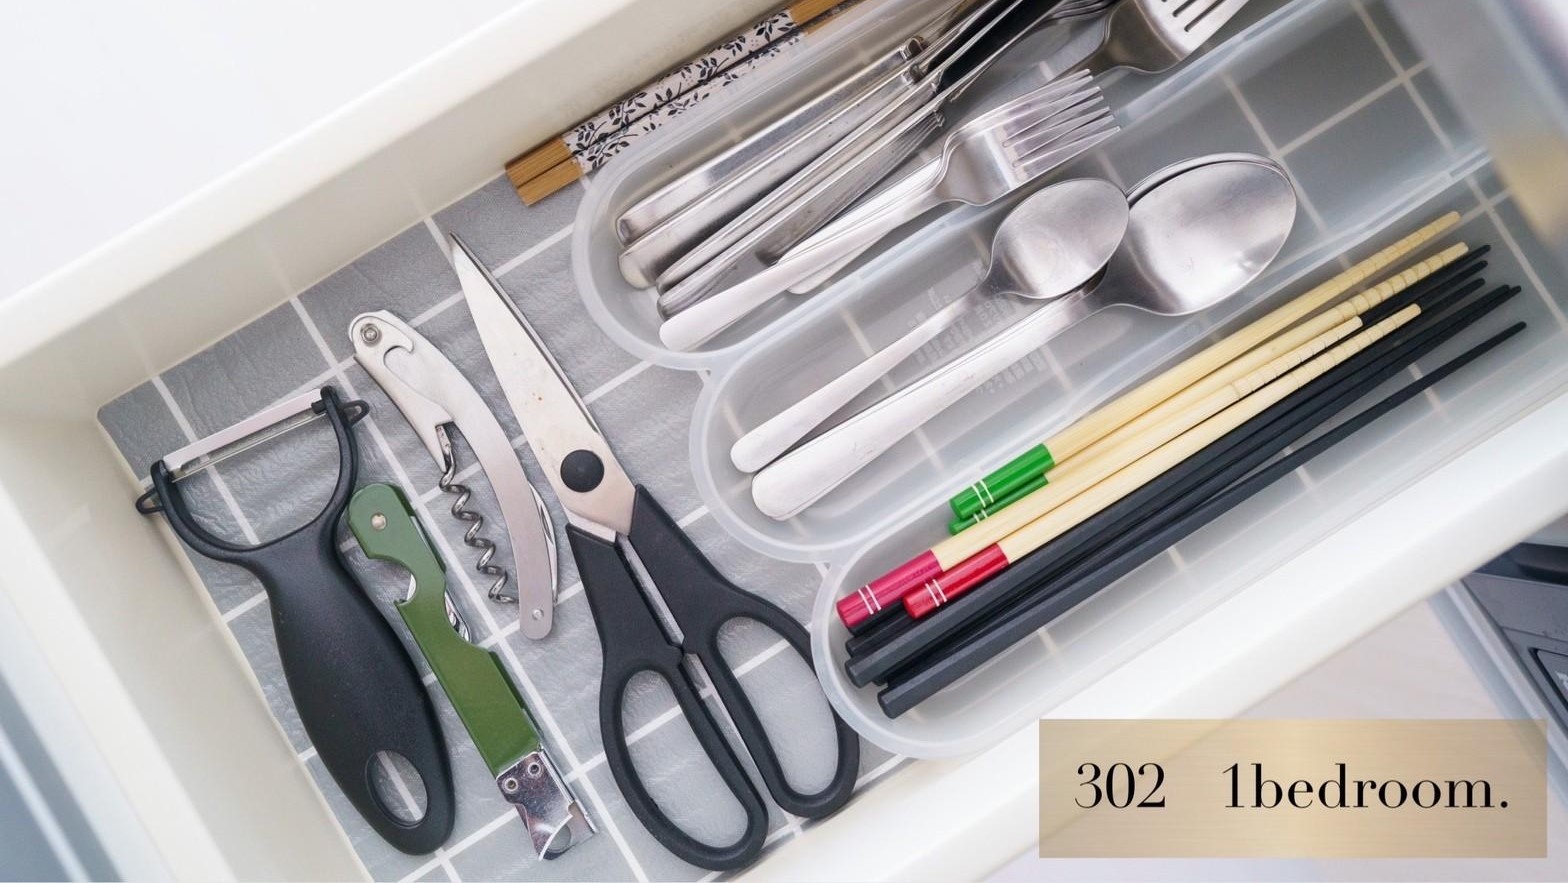 301・302：キッチンにはフライパン・調理器具・食器類をご用意しております。